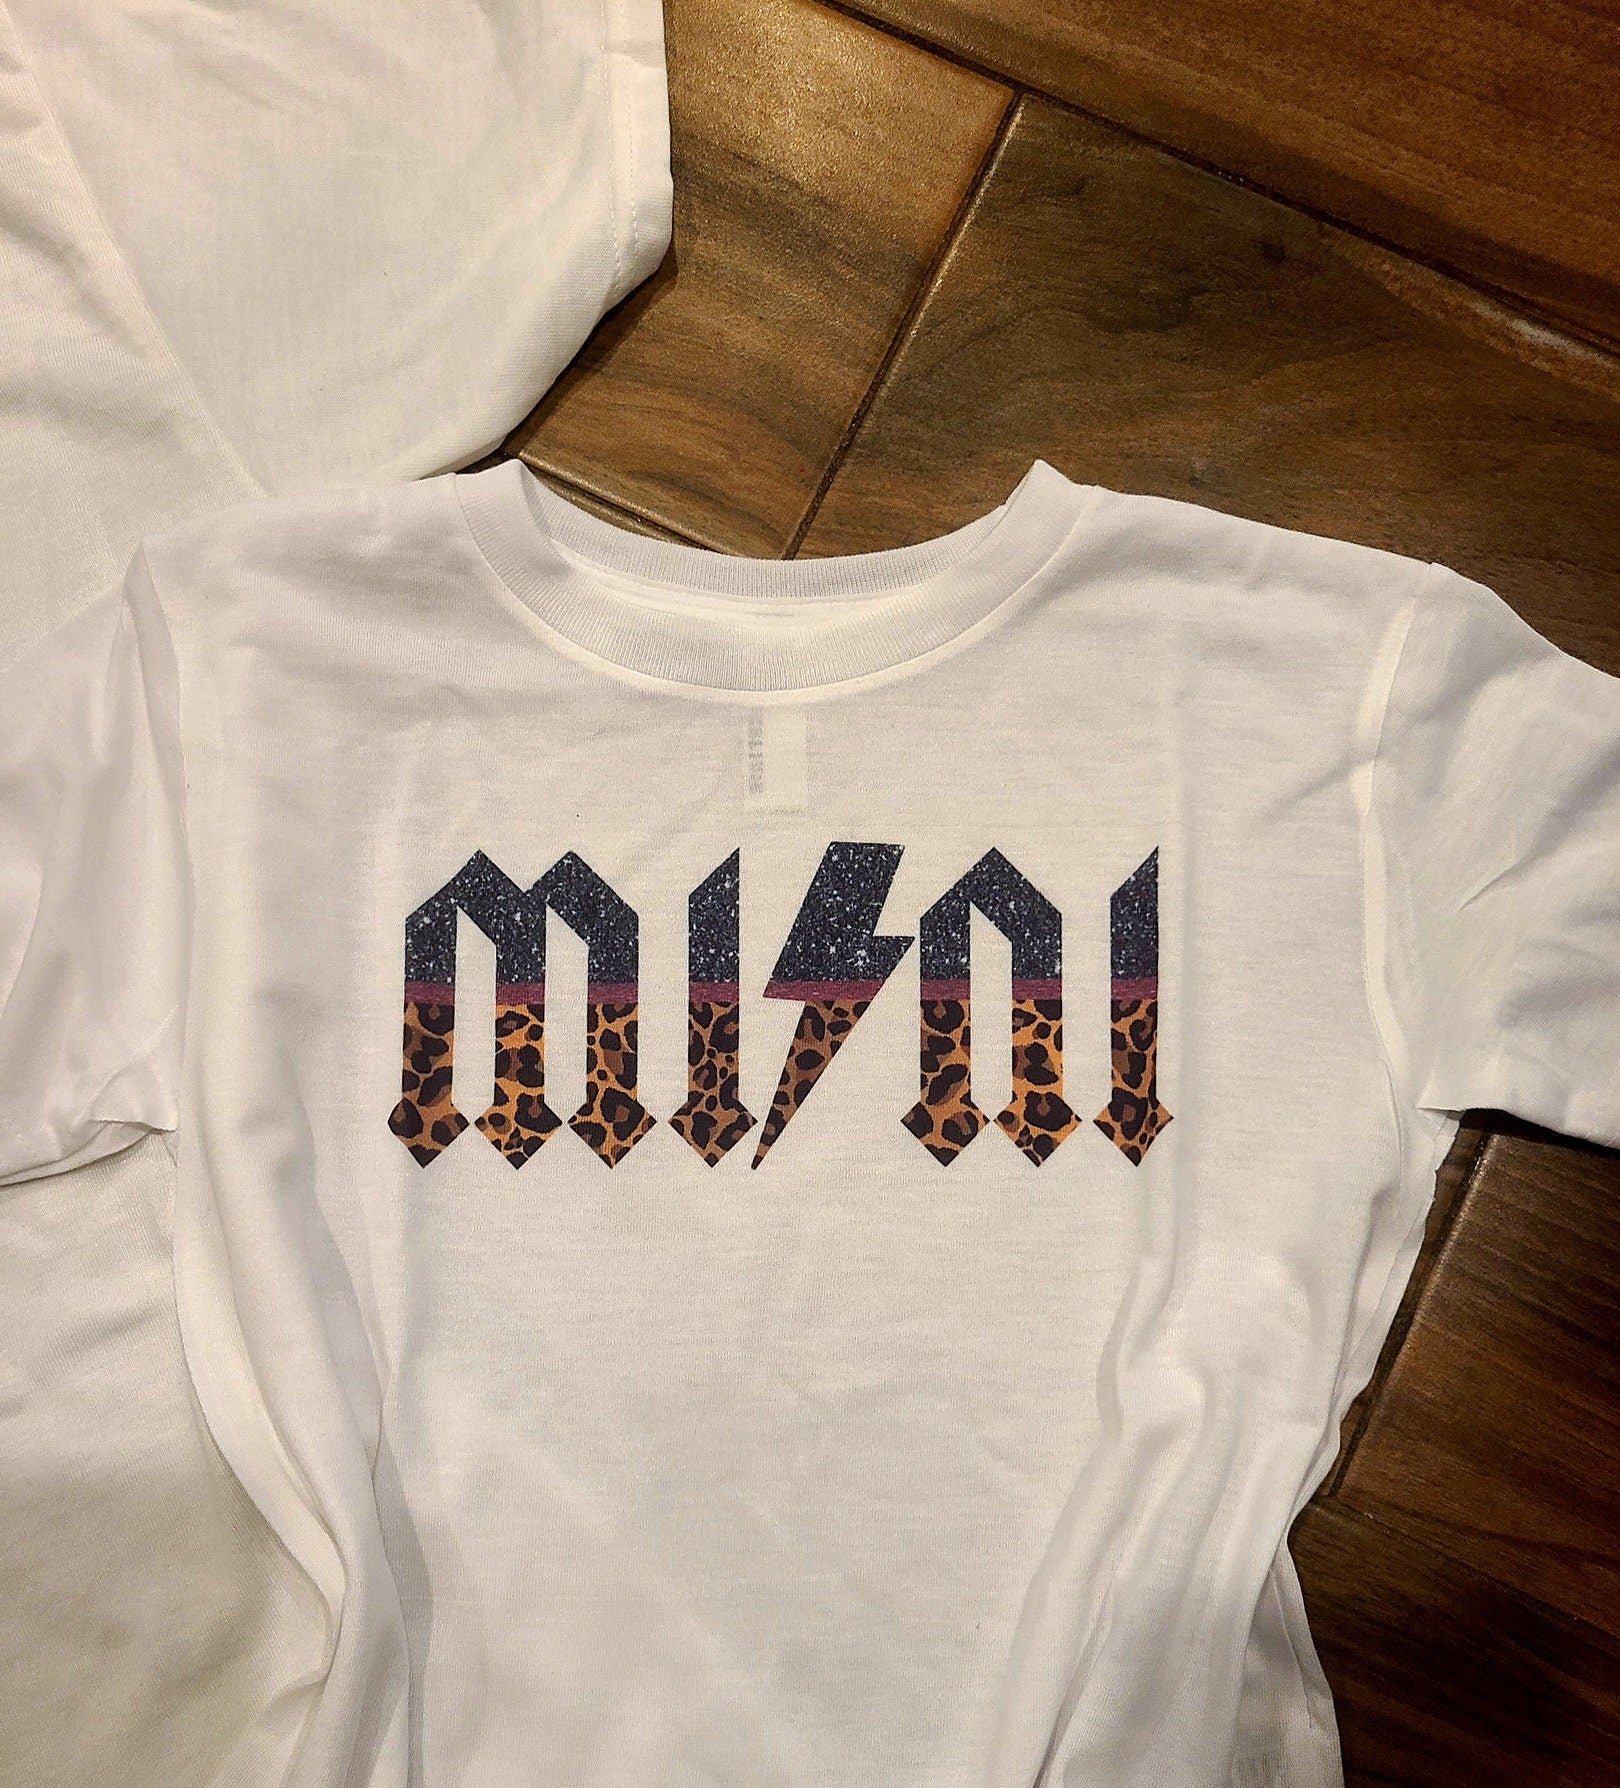 Rocker Mama and Mini Shirt